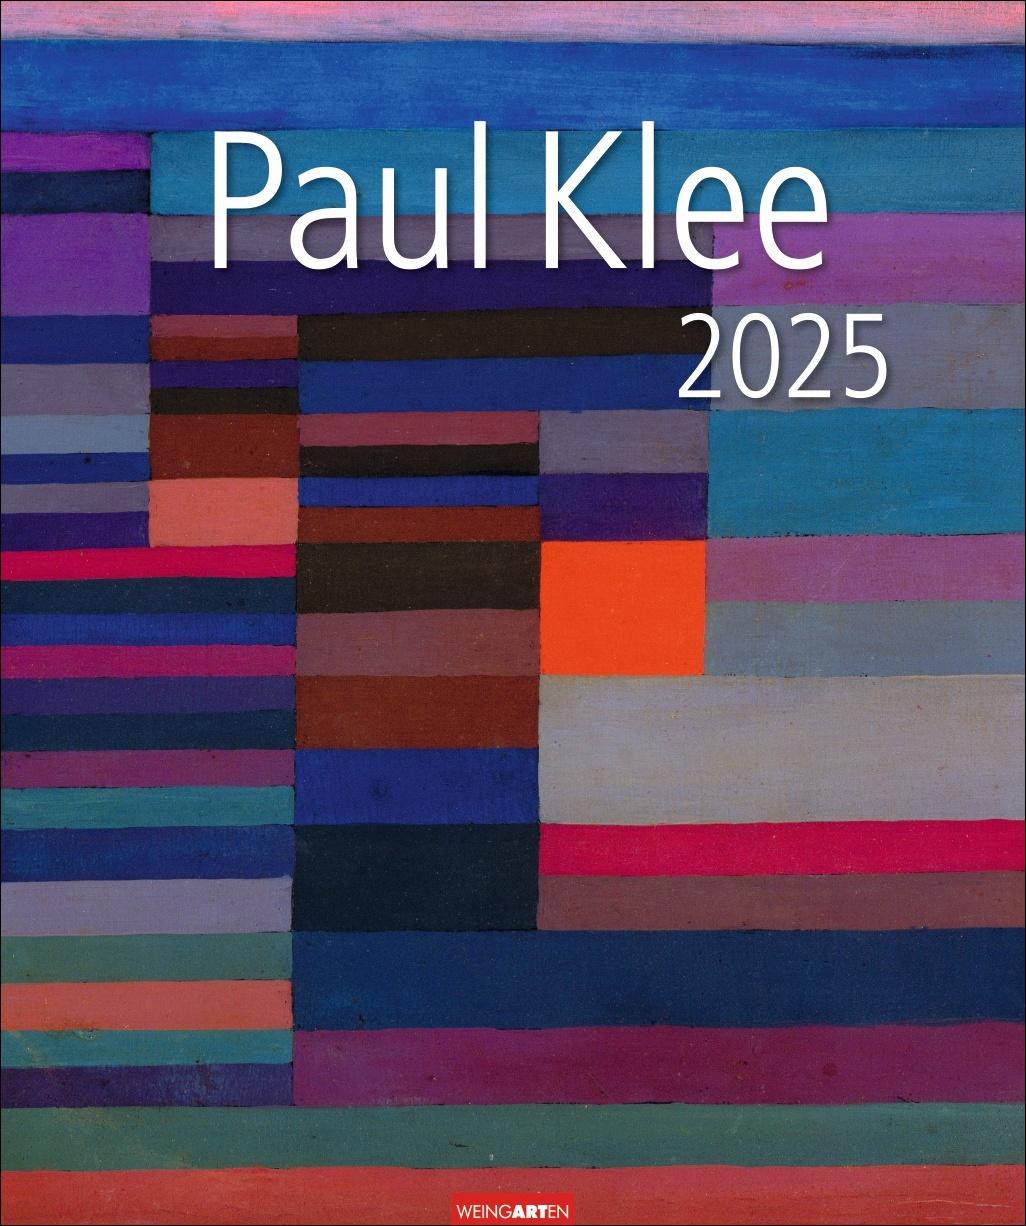 Paul Klee Kalender 2025 Großer Wandkalender mit bekannten und selten gezeigten Werken des vielseitigen Künstlers. Kunstkalender im Großformat 46 x 55 cm.